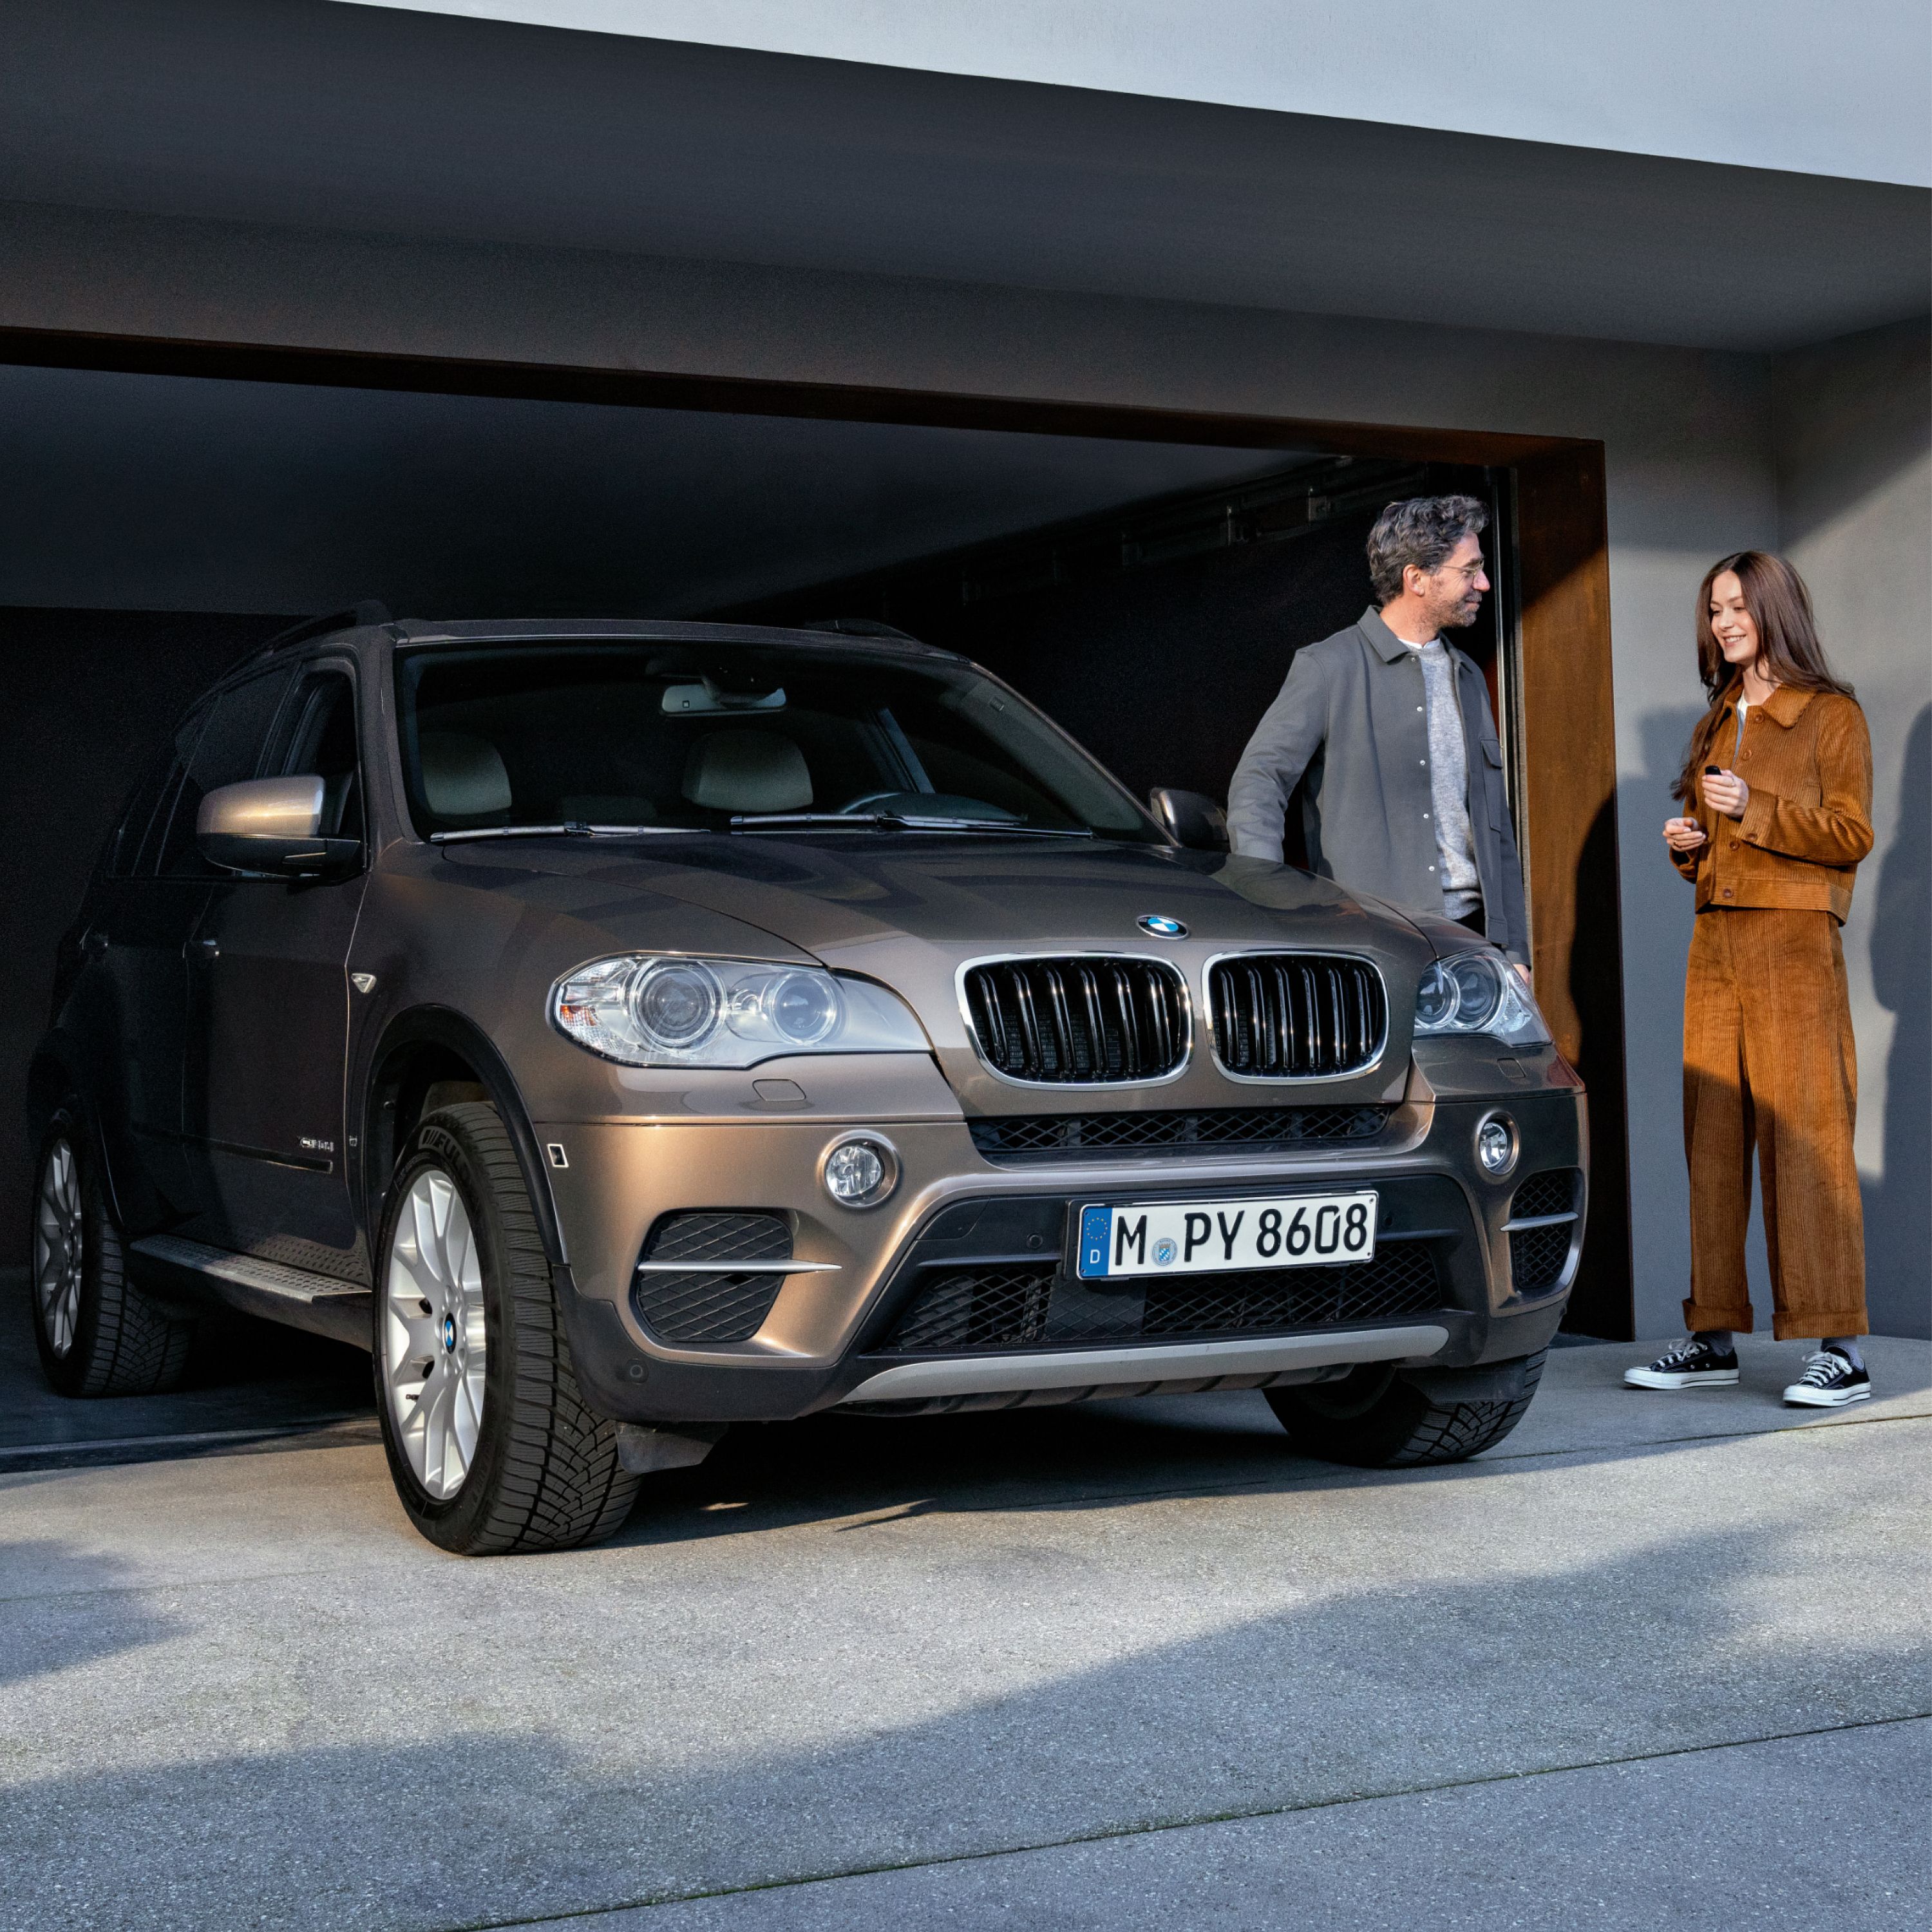 Balík BMW Value Service, BMW stojace pred garážou s modelmi